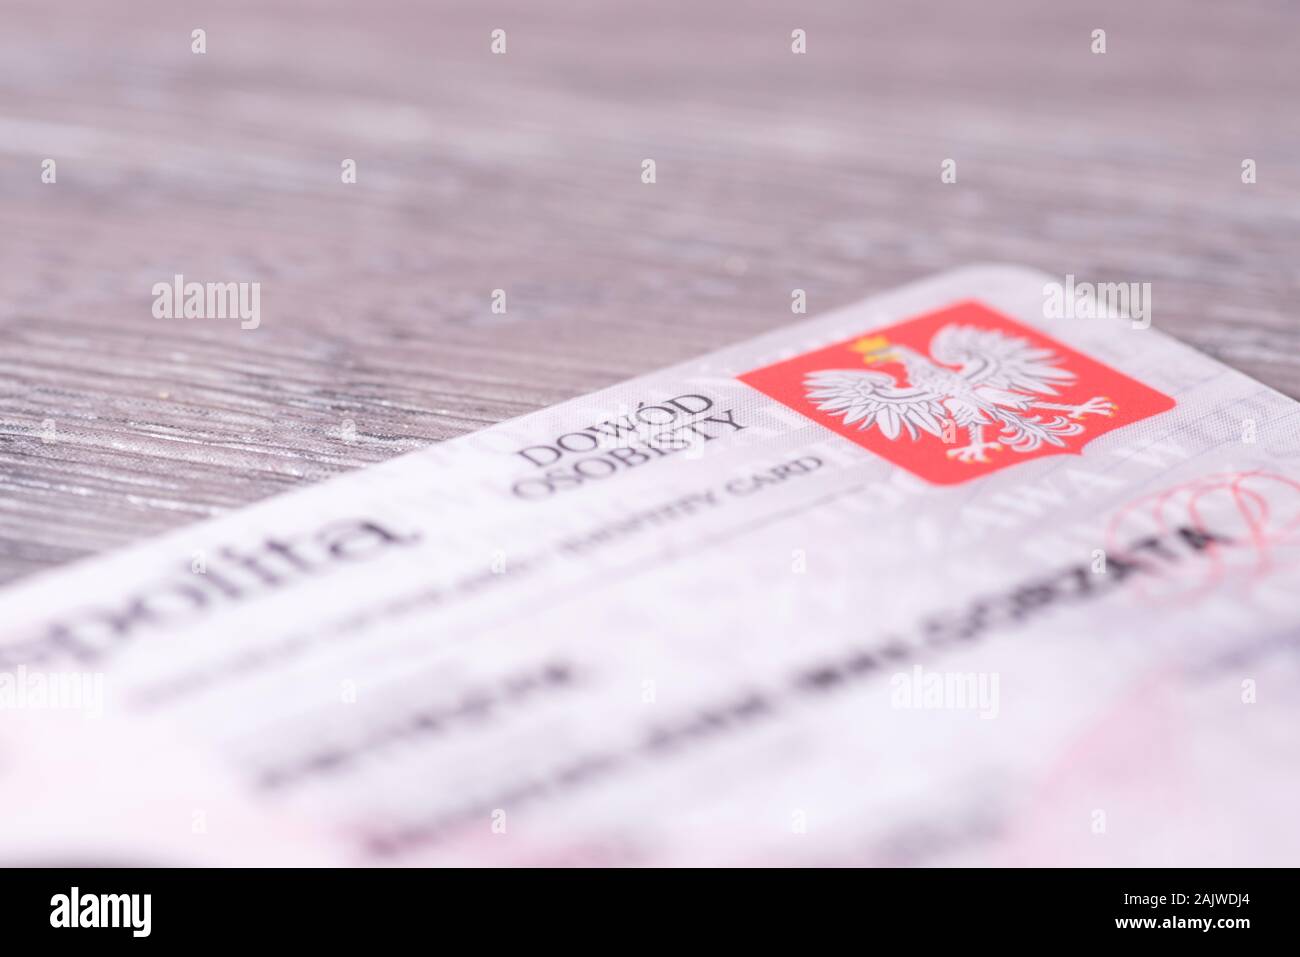 A Polish identity card Stock Photo